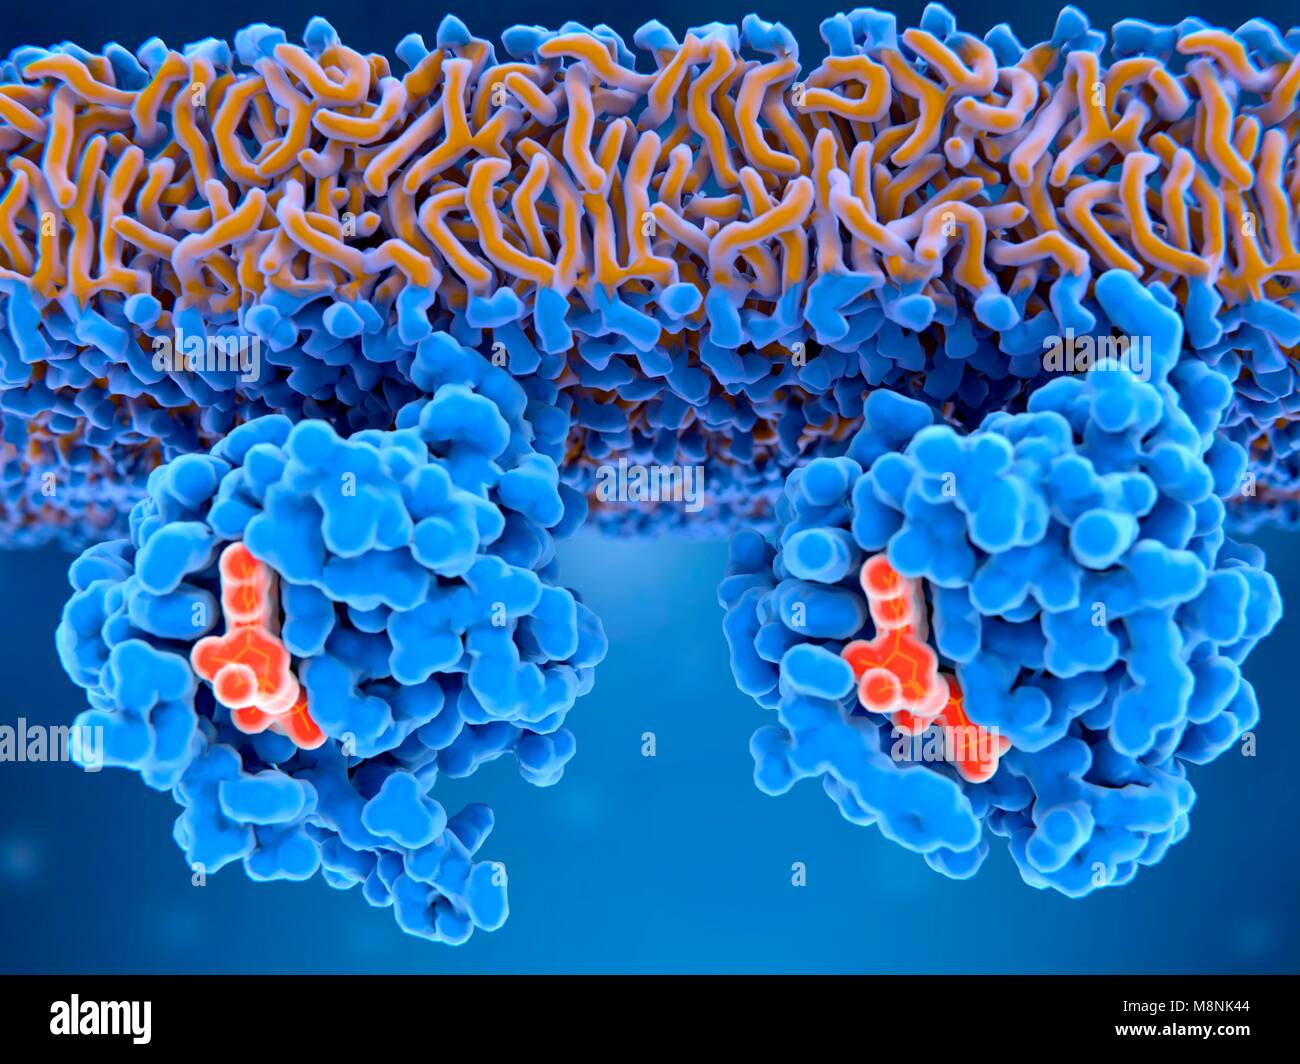 Inattivo (sinistra) e attiva (a destra) le proteine ras, illustrazione. Inattivo proteine ras hanno un PIL (guanina difosfato, arancione) legato al loro sito attivo, mentre ras attiva le proteine hanno GTP (guanina trifosfato, arancione) legato al loro sito attivo. Le proteine ras sono coinvolti nella trasmissione di segnali all'interno di cellule, girando su geni implicati nella crescita cellulare, la differenziazione e la sopravvivenza. Mutazioni in geni ras può portare a permanentemente attivato proteine indurre le cellule a suddividere ulteriormente senza controllo, che spesso portano al cancro. Foto Stock